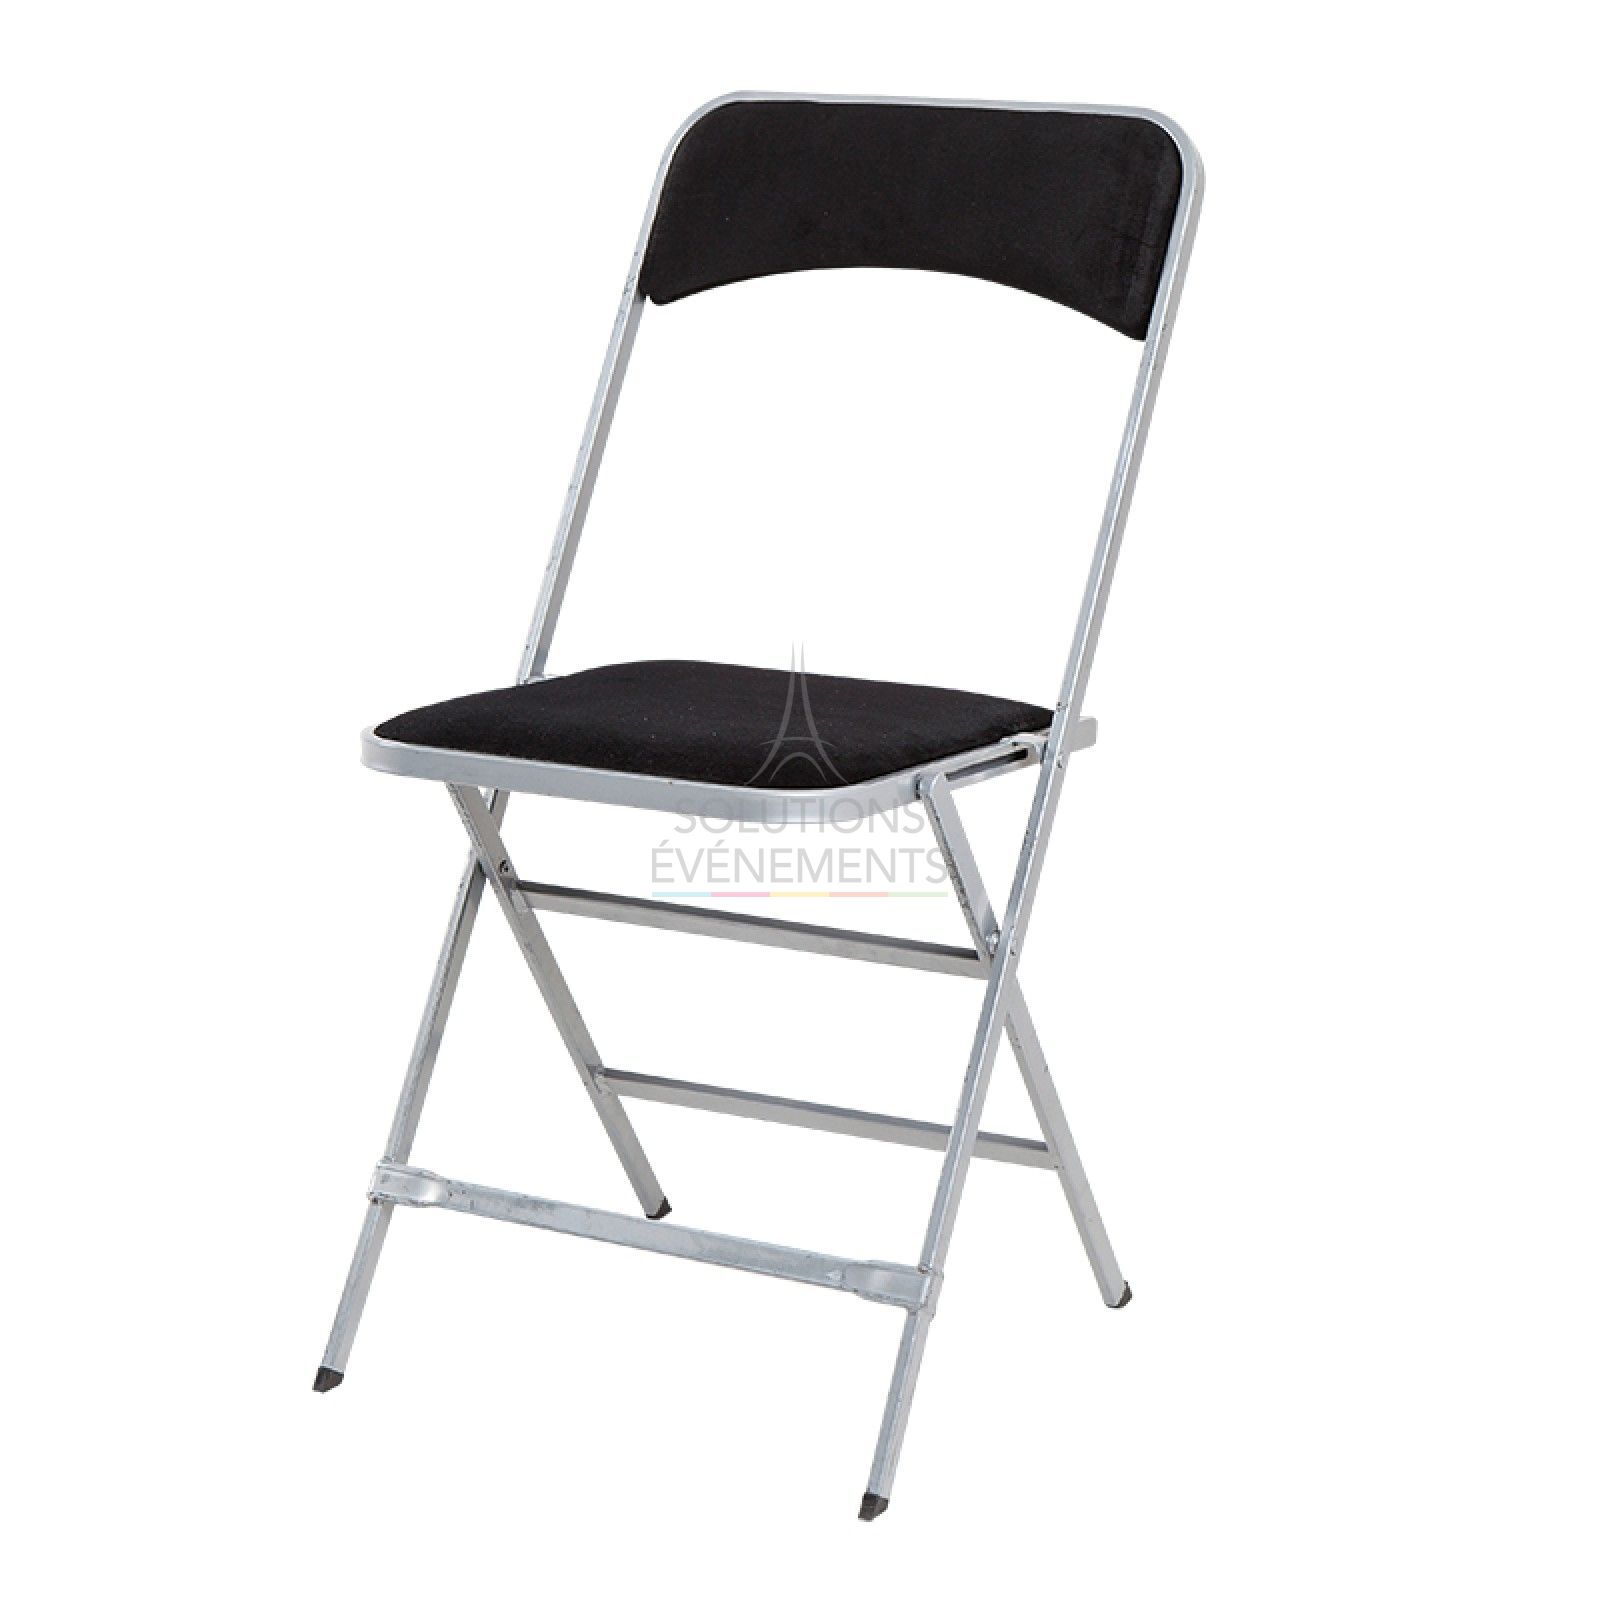 Gray folding chair rental with black velvet